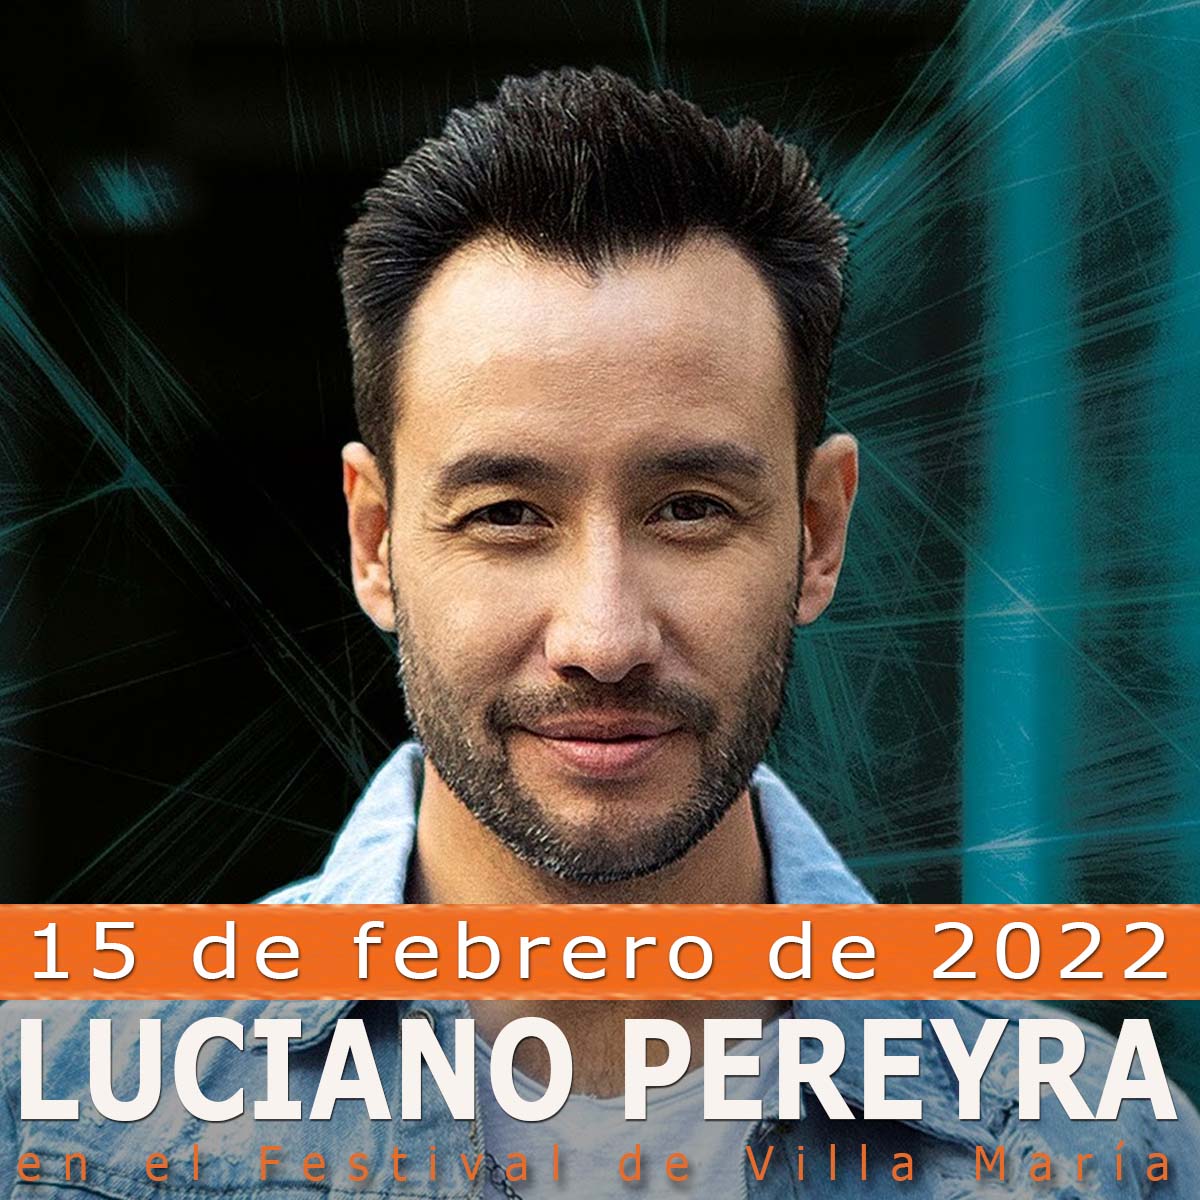 Luciano Pereyra en el Festival Villa María 2022